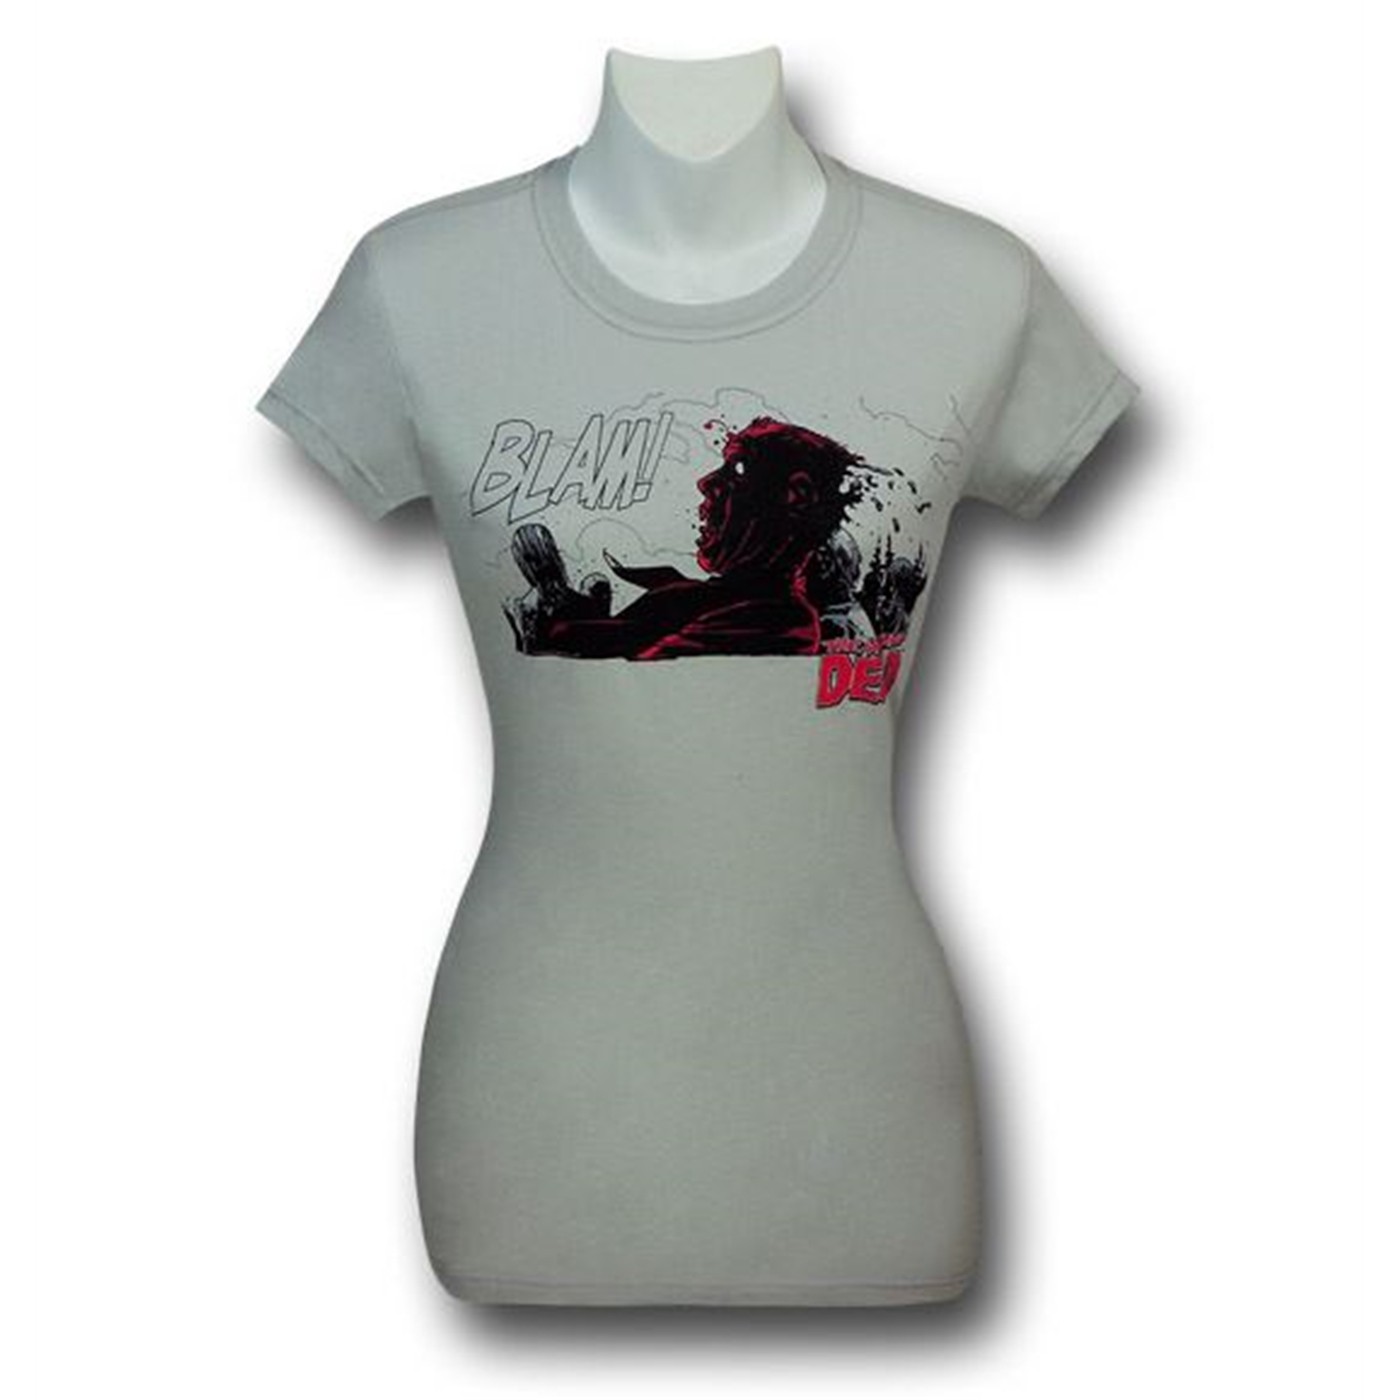 Walking Dead BLAM Women's T-Shirt